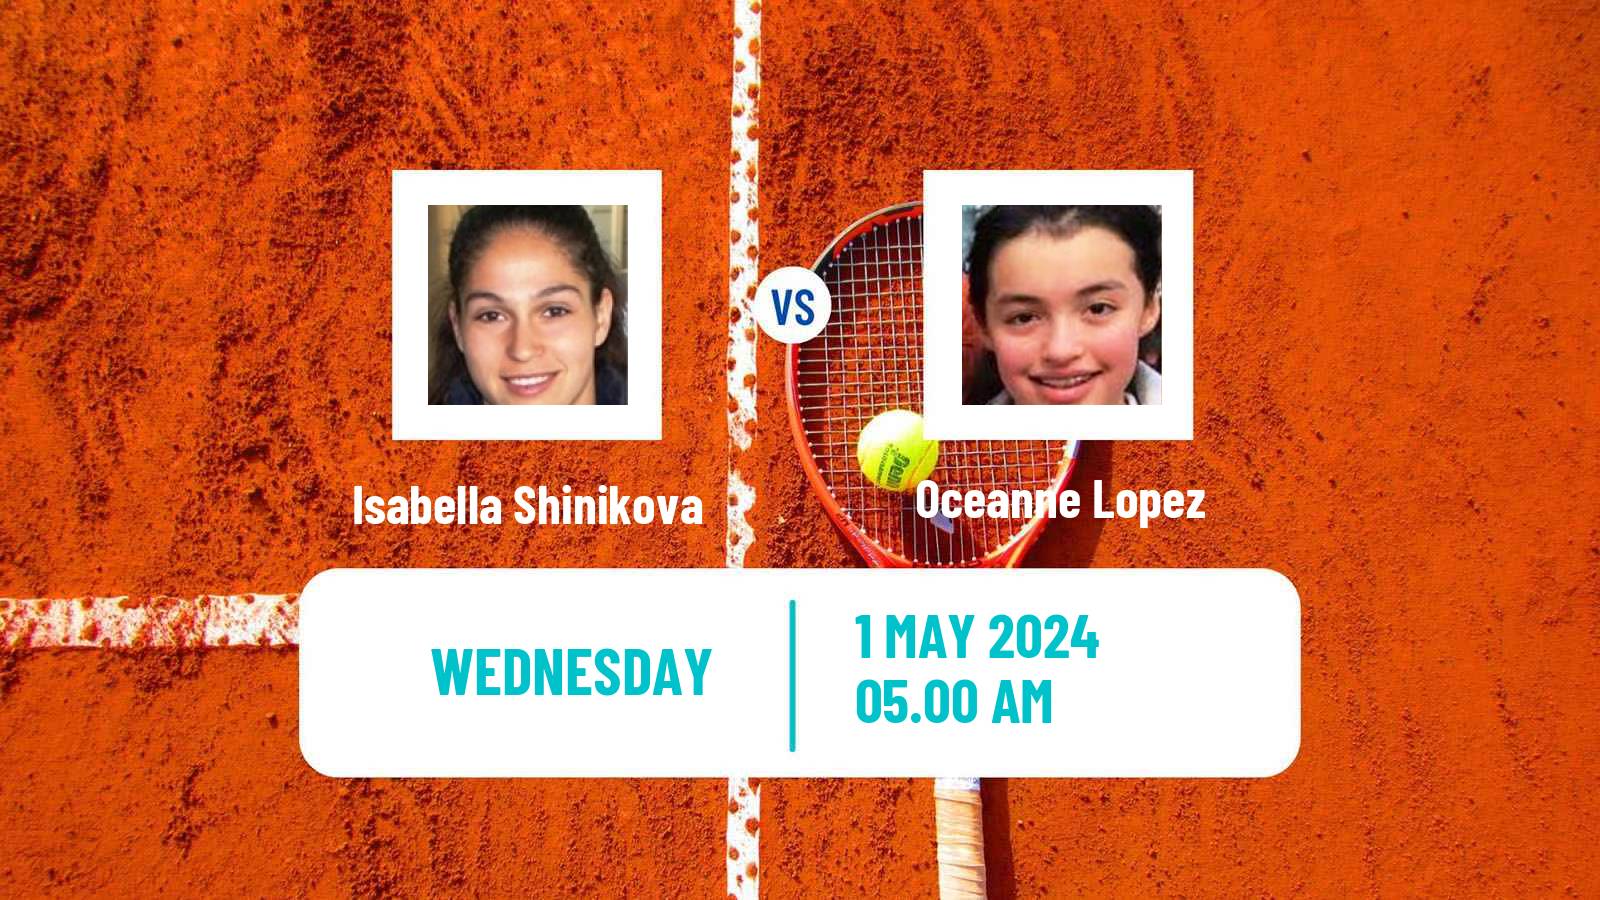 Tennis ITF W35 Hammamet 7 Women Isabella Shinikova - Oceanne Lopez